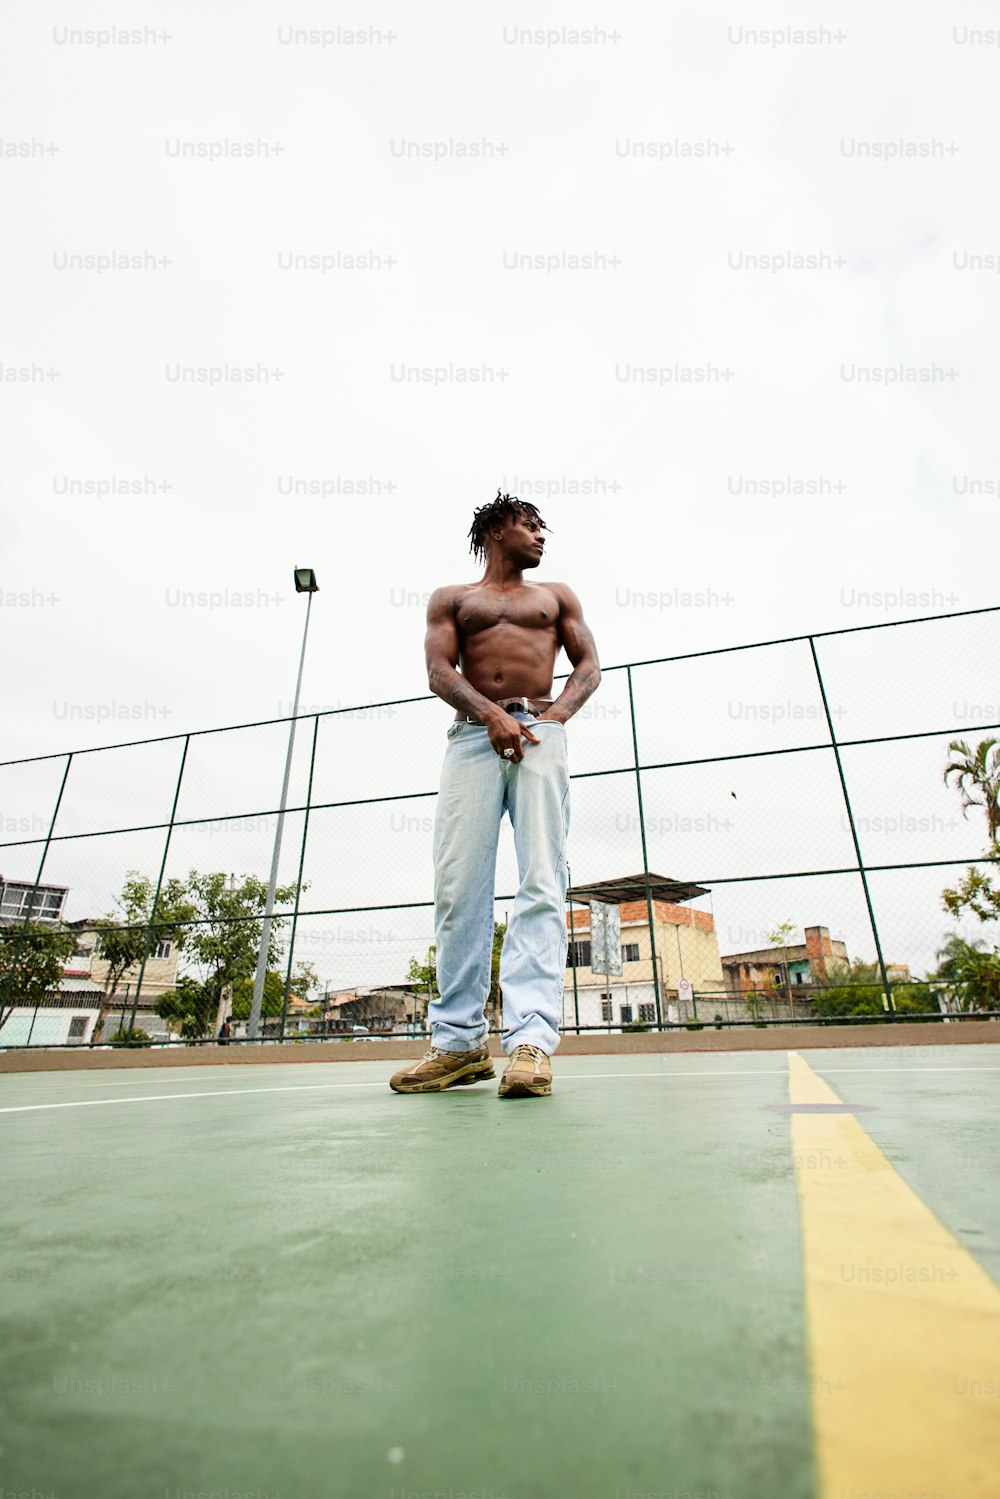 a shirtless man standing on a tennis court